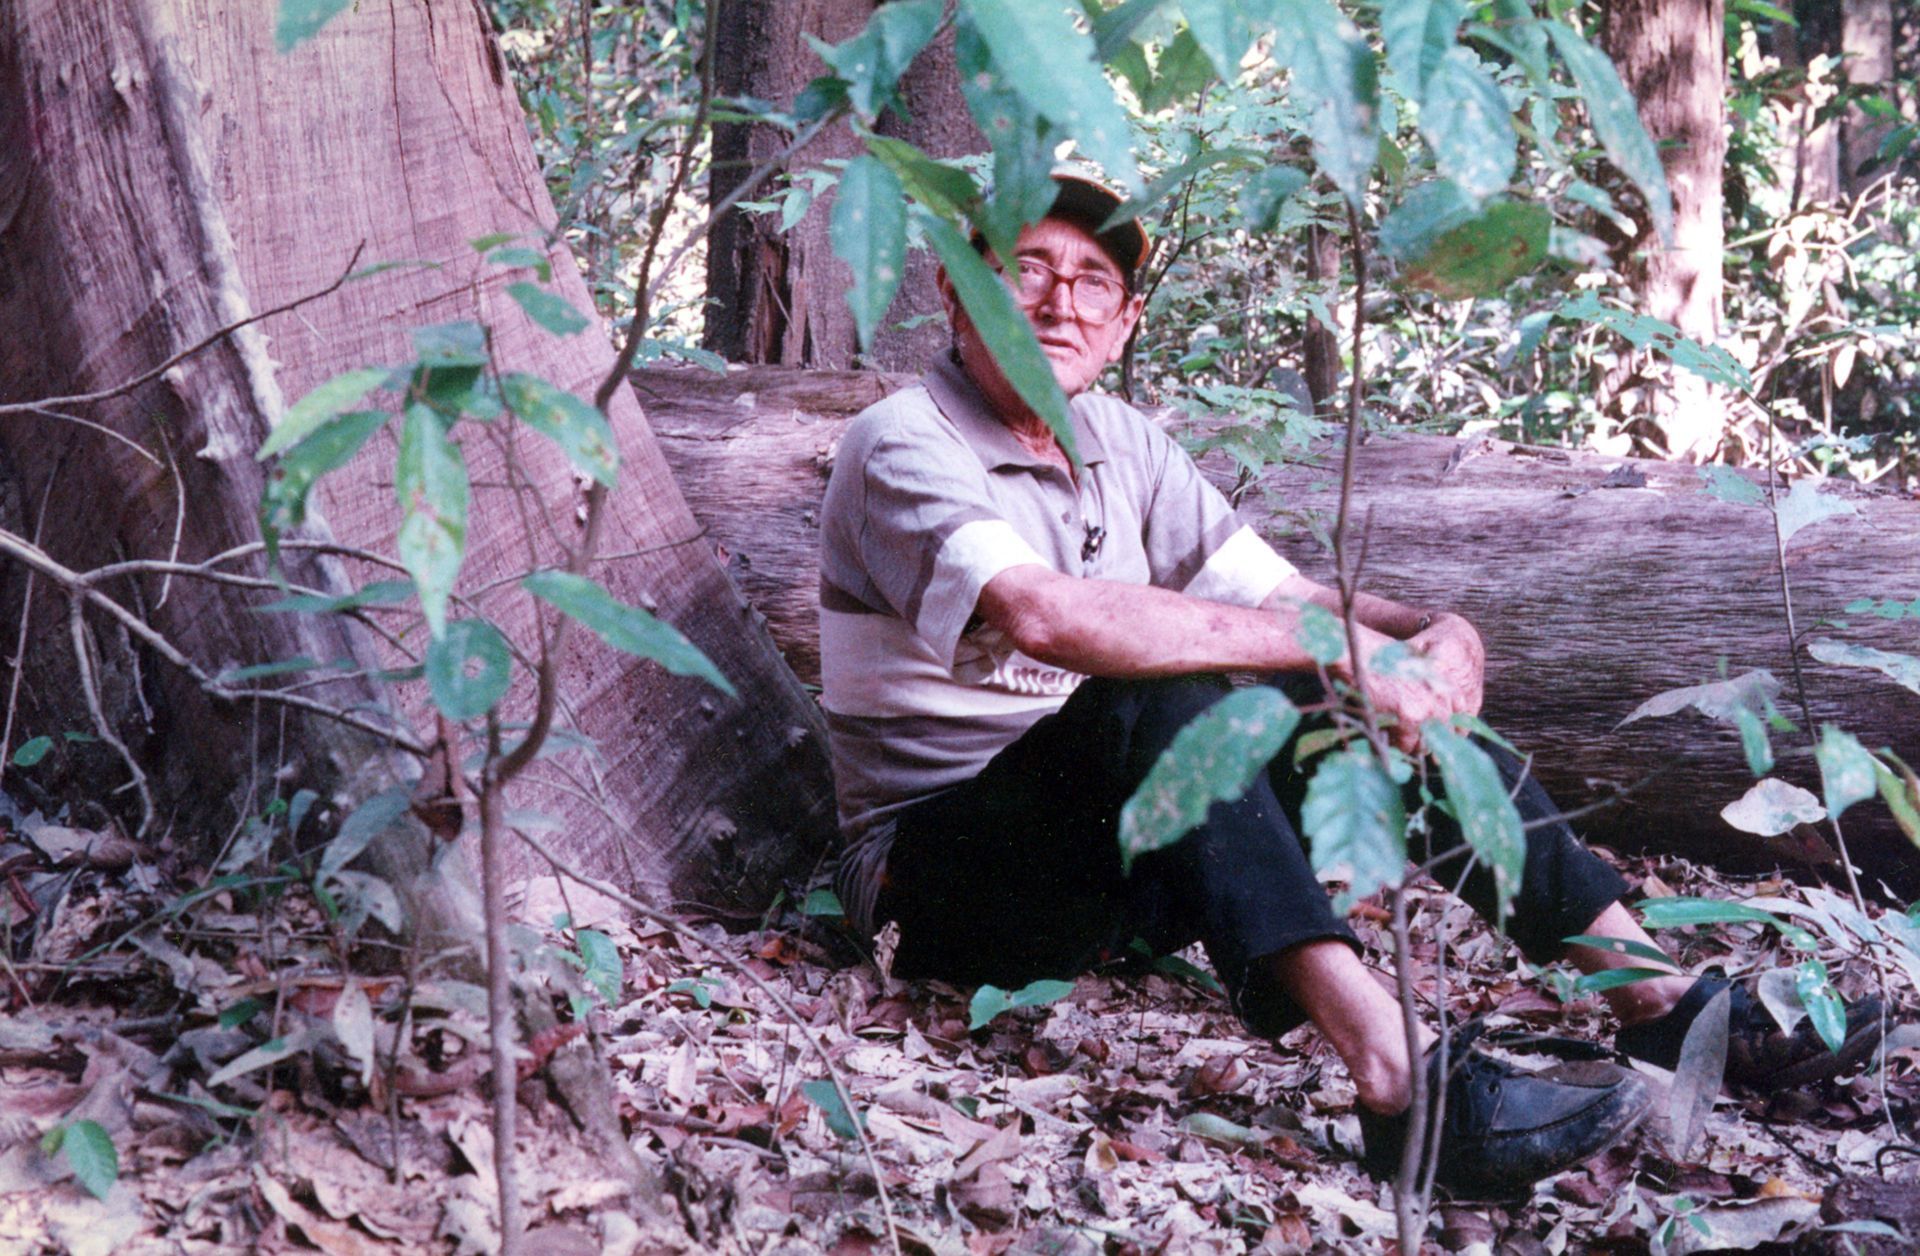 A vida pela floresta: Chico Mendes sob o olhar de um seringueiro Sem Terra